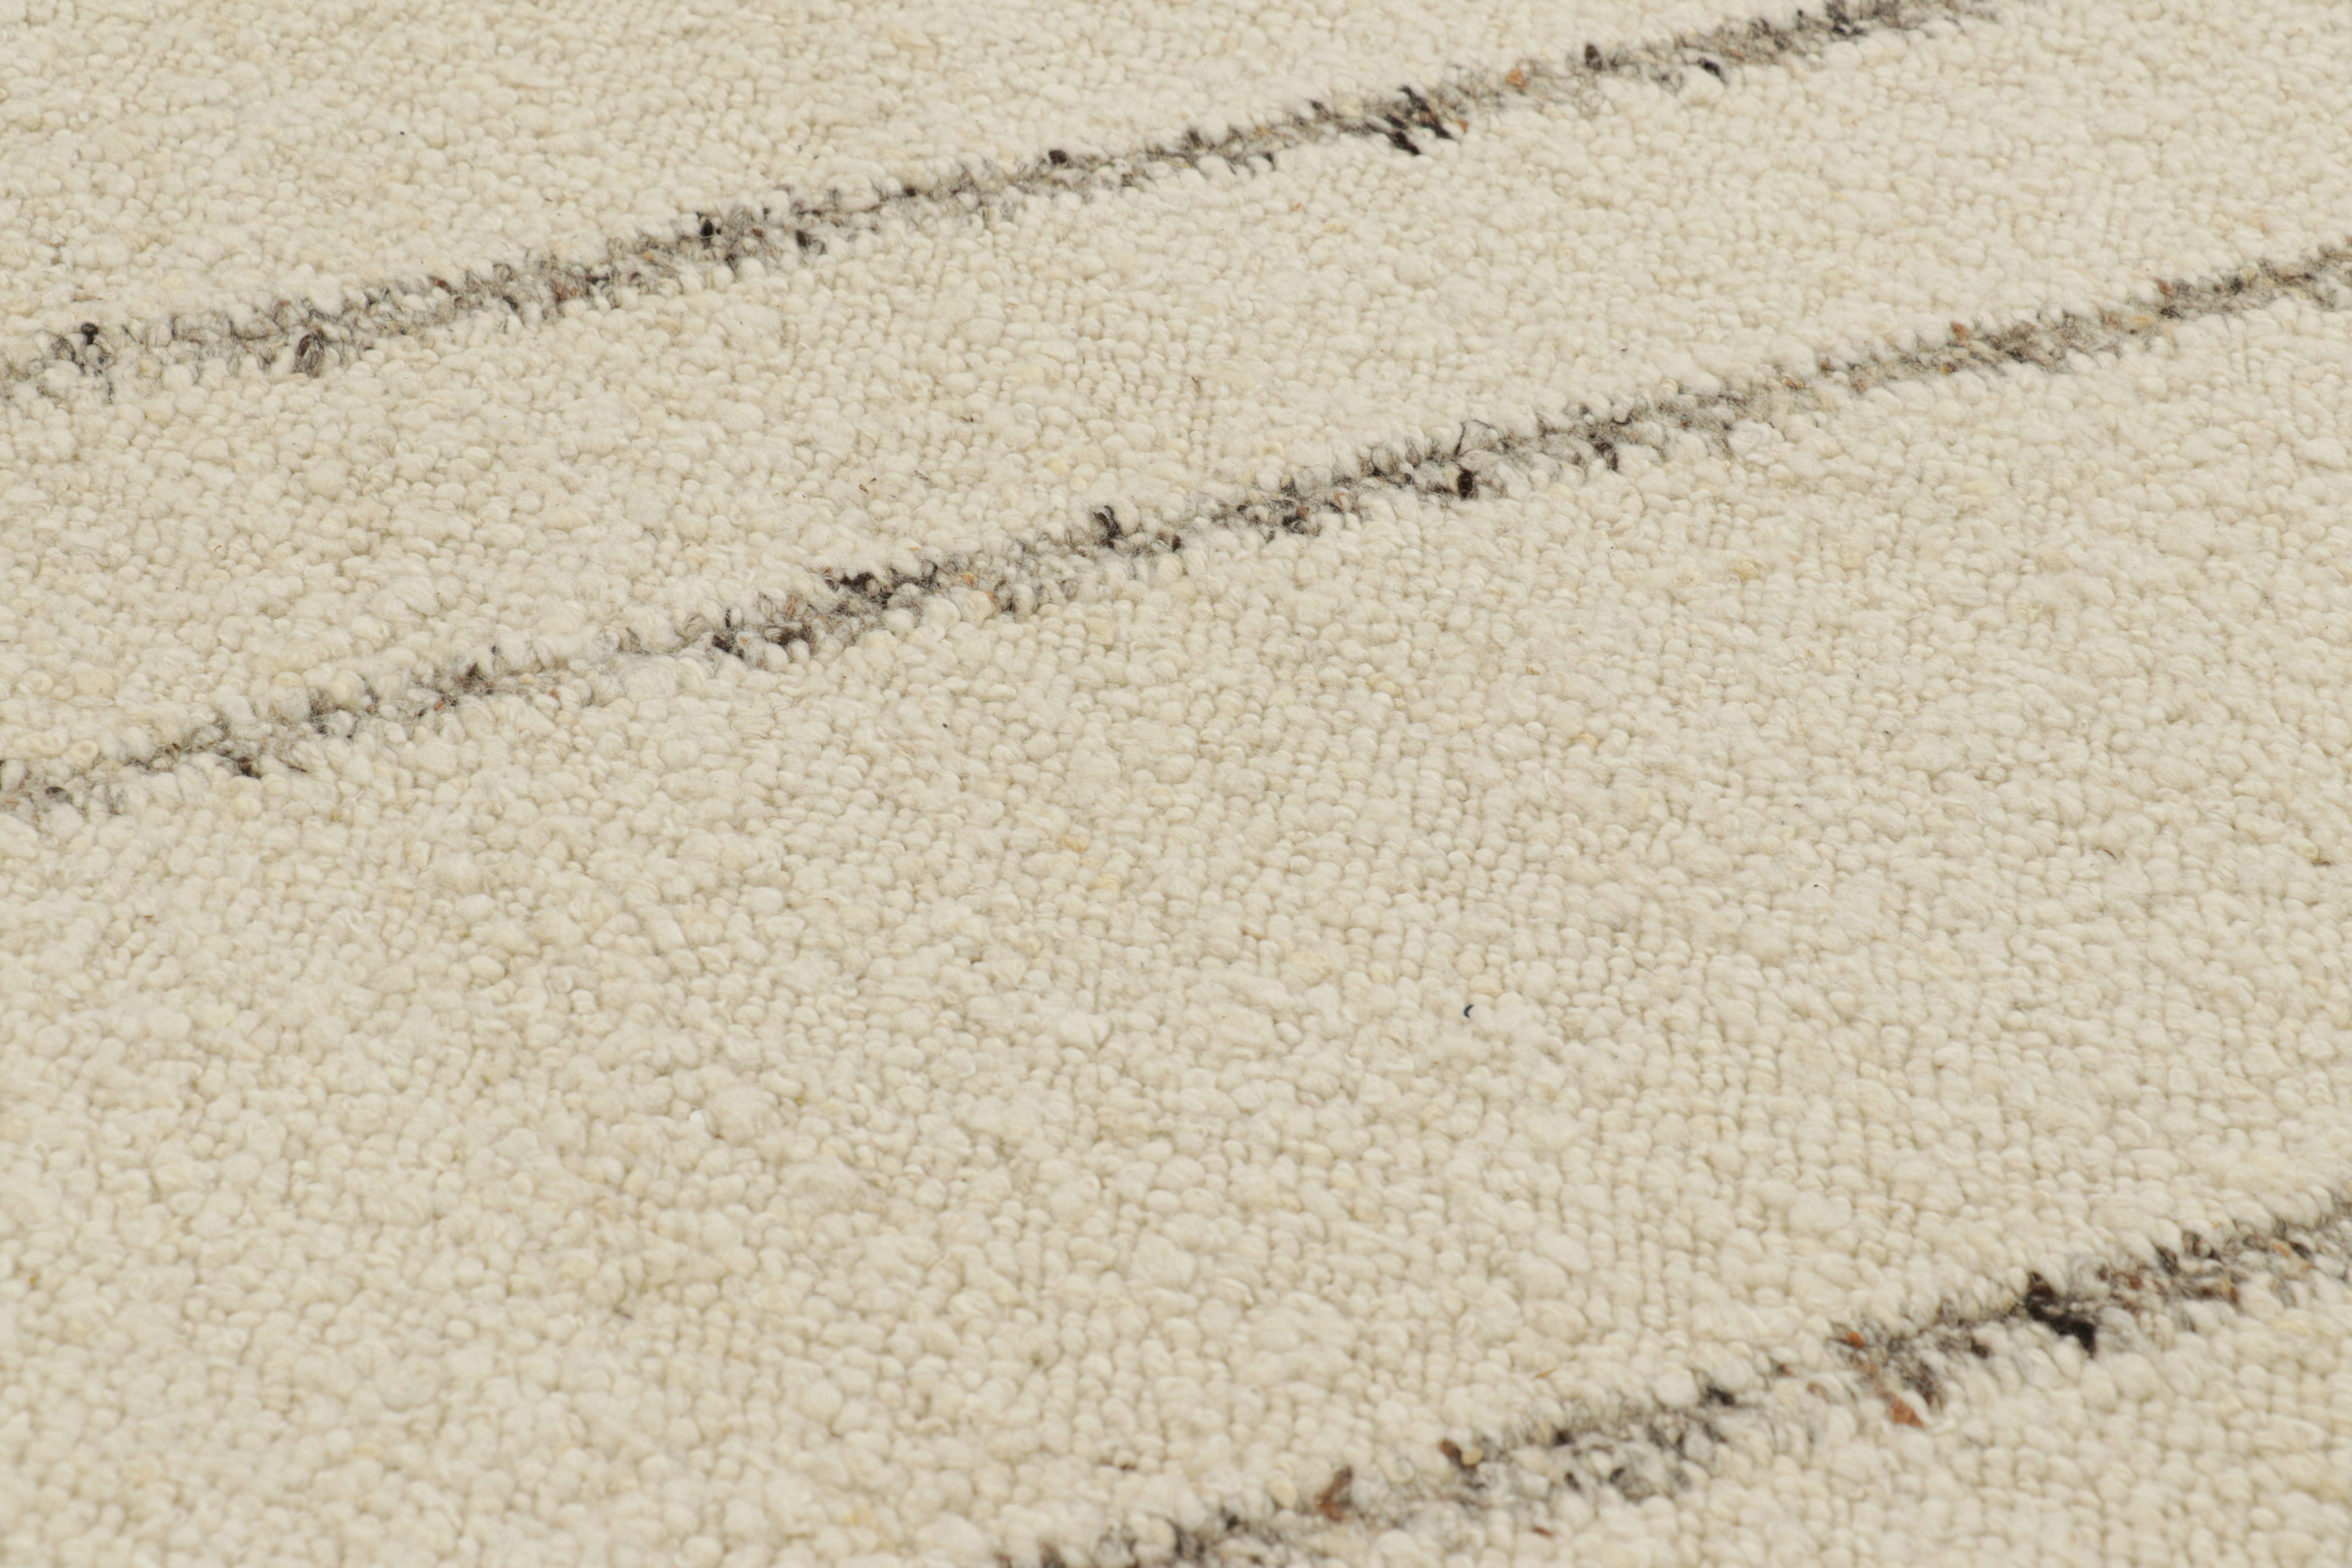 Dieser 9x12 Kilim aus handgewebter Wolle ist ein elegantes, modernes und strukturiertes Stück von Rug & Kilim, mit subtilen Farbvariationen und einer boucleartigen Textur, die den einfachen Streifen auf dem cremeweißen Feld ein fabelhaftes Gefühl